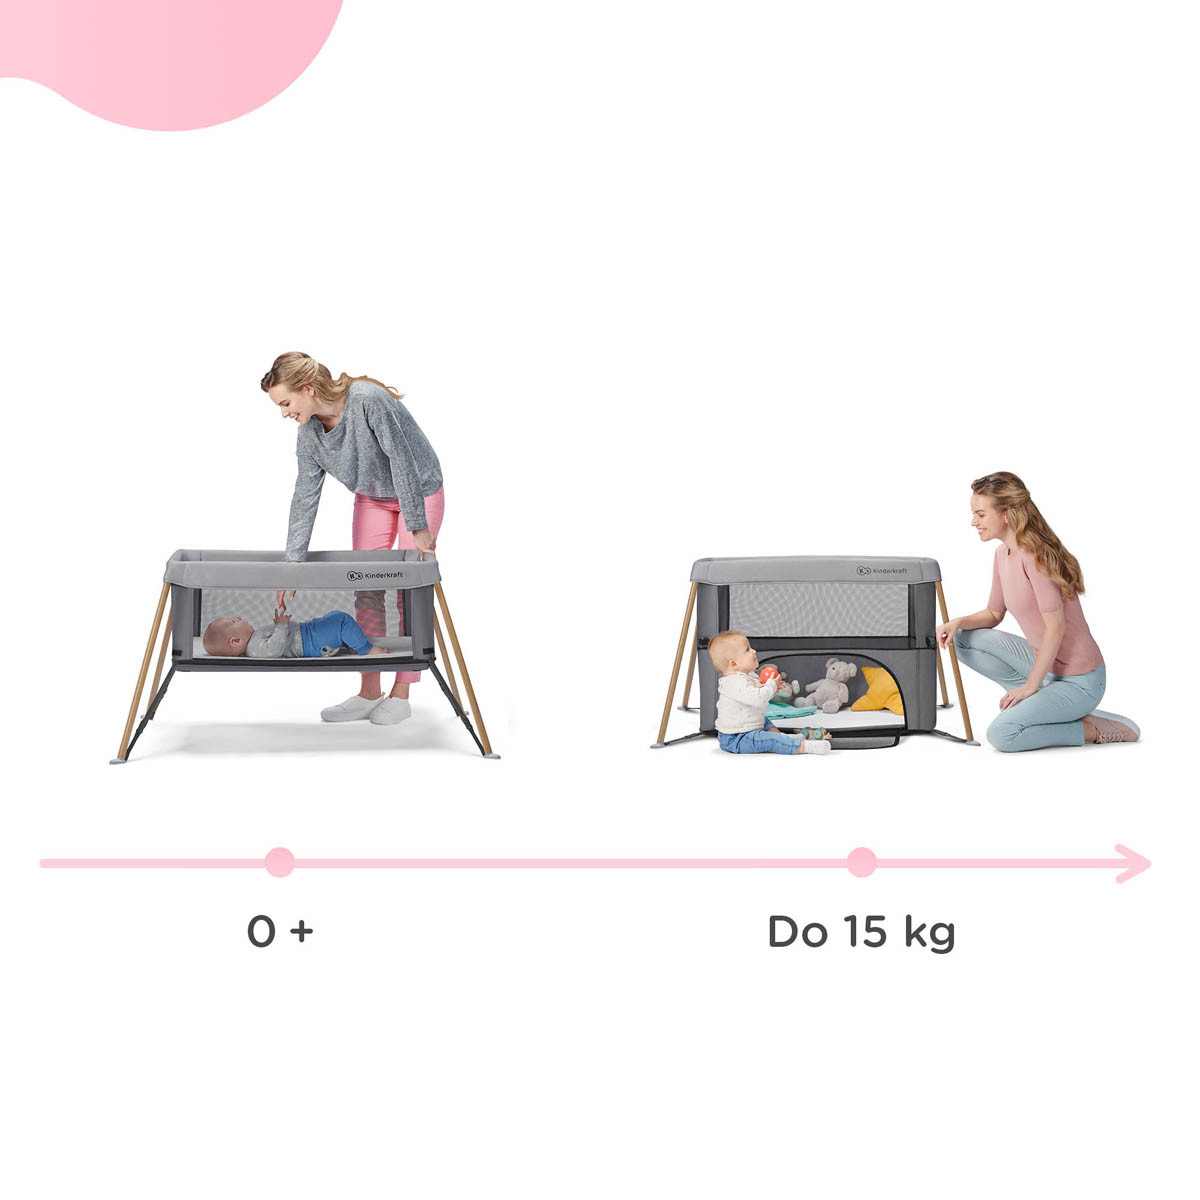 Cuna de viaje Movi de Kinderkraft 2 en 1, desde el nacimiento hasta los 15 kg.